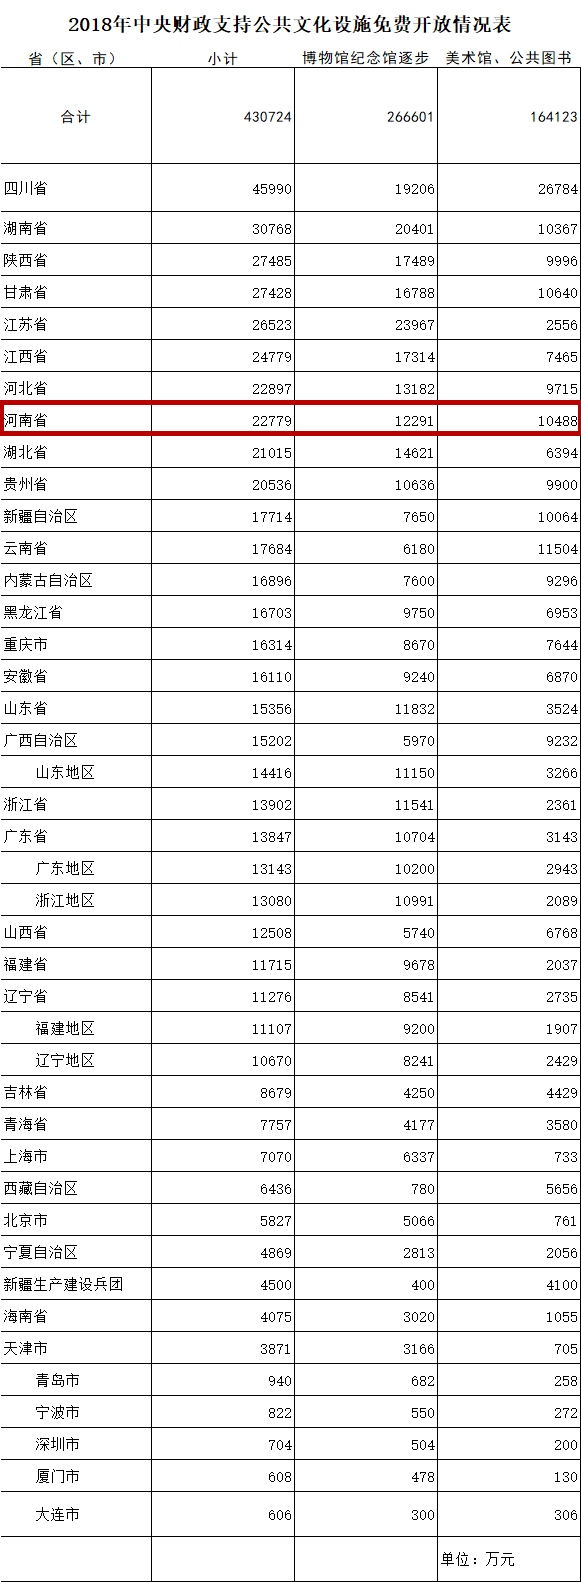 【经济速递-文字列表】河南获中央2.28亿补助公共文化设施免费开放